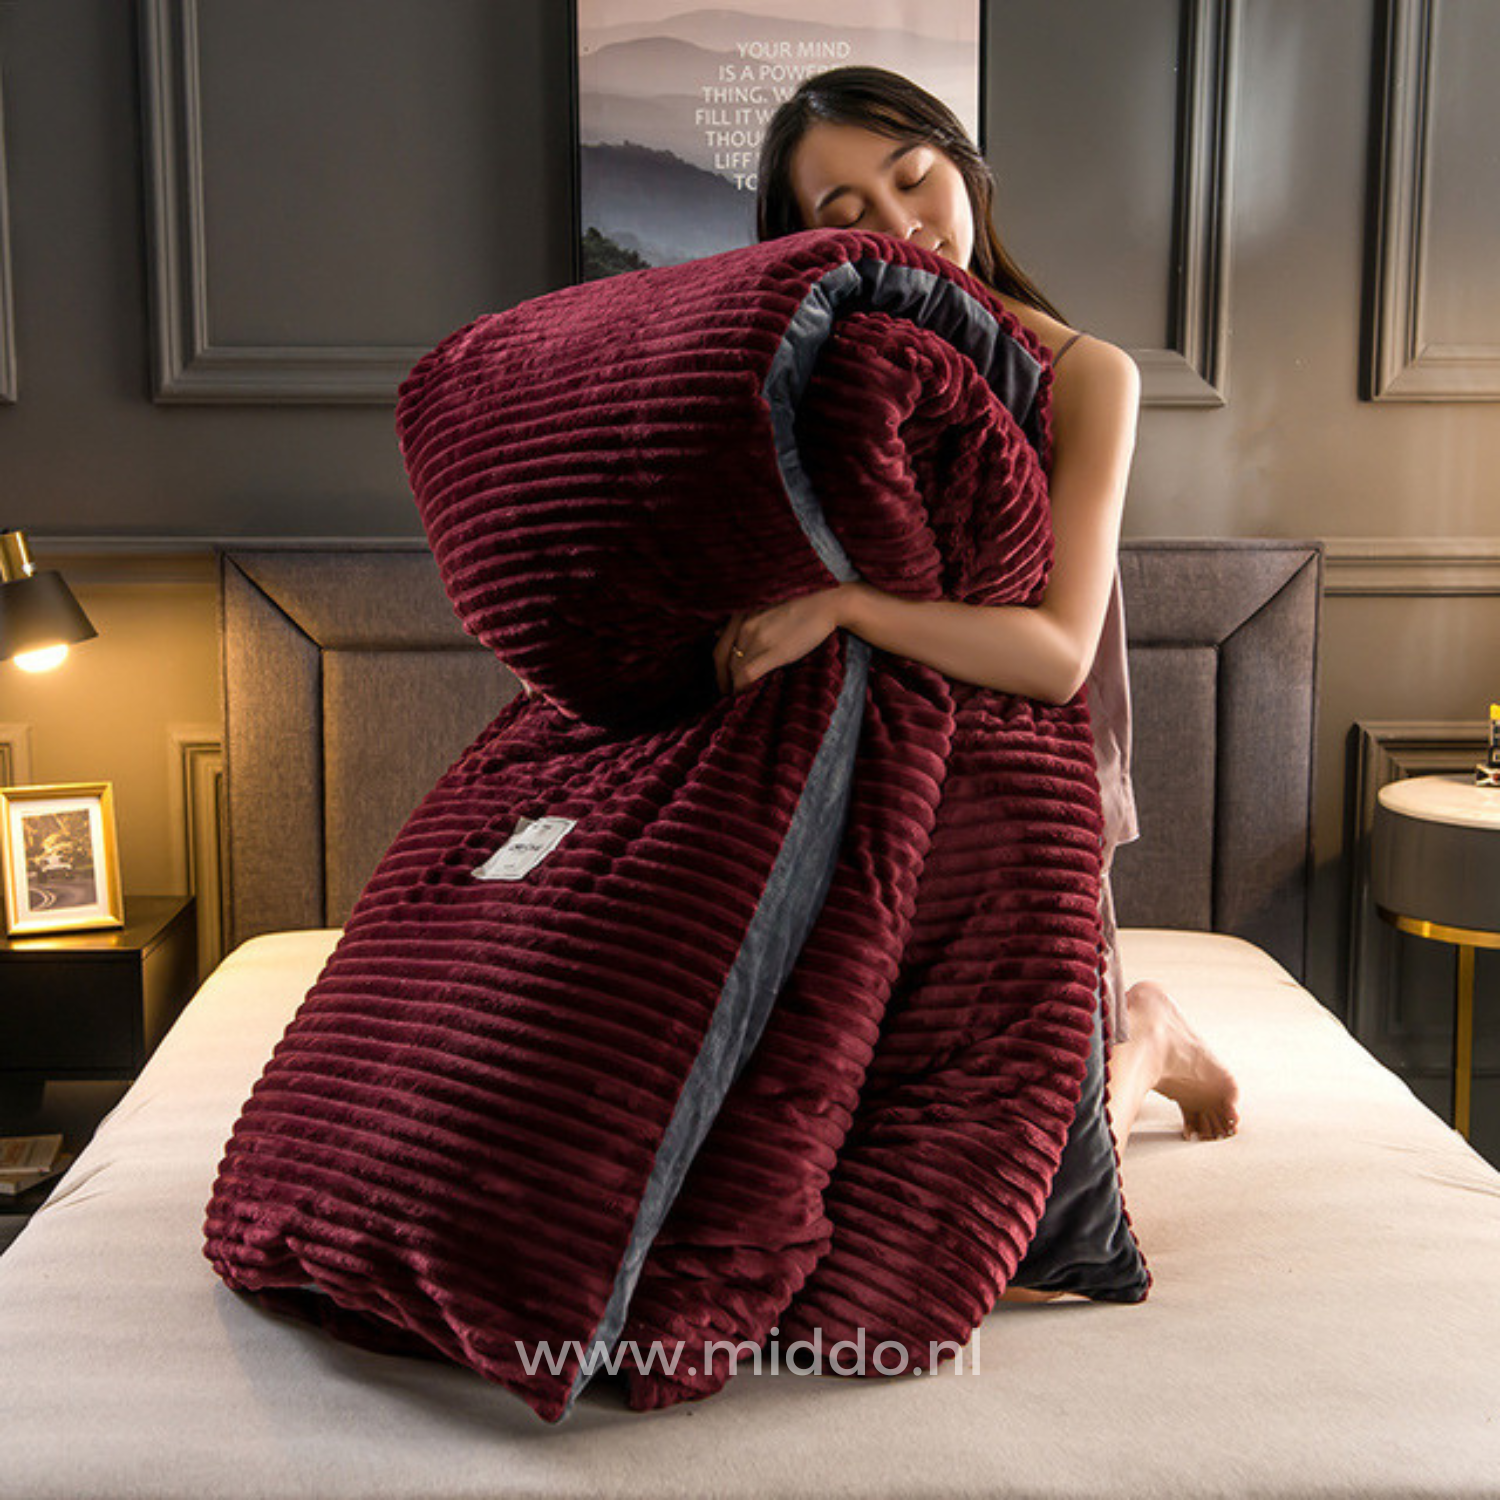 Vrouw met opgevouwen wijnrood dekbedovertrek met dekbed erin op een bed